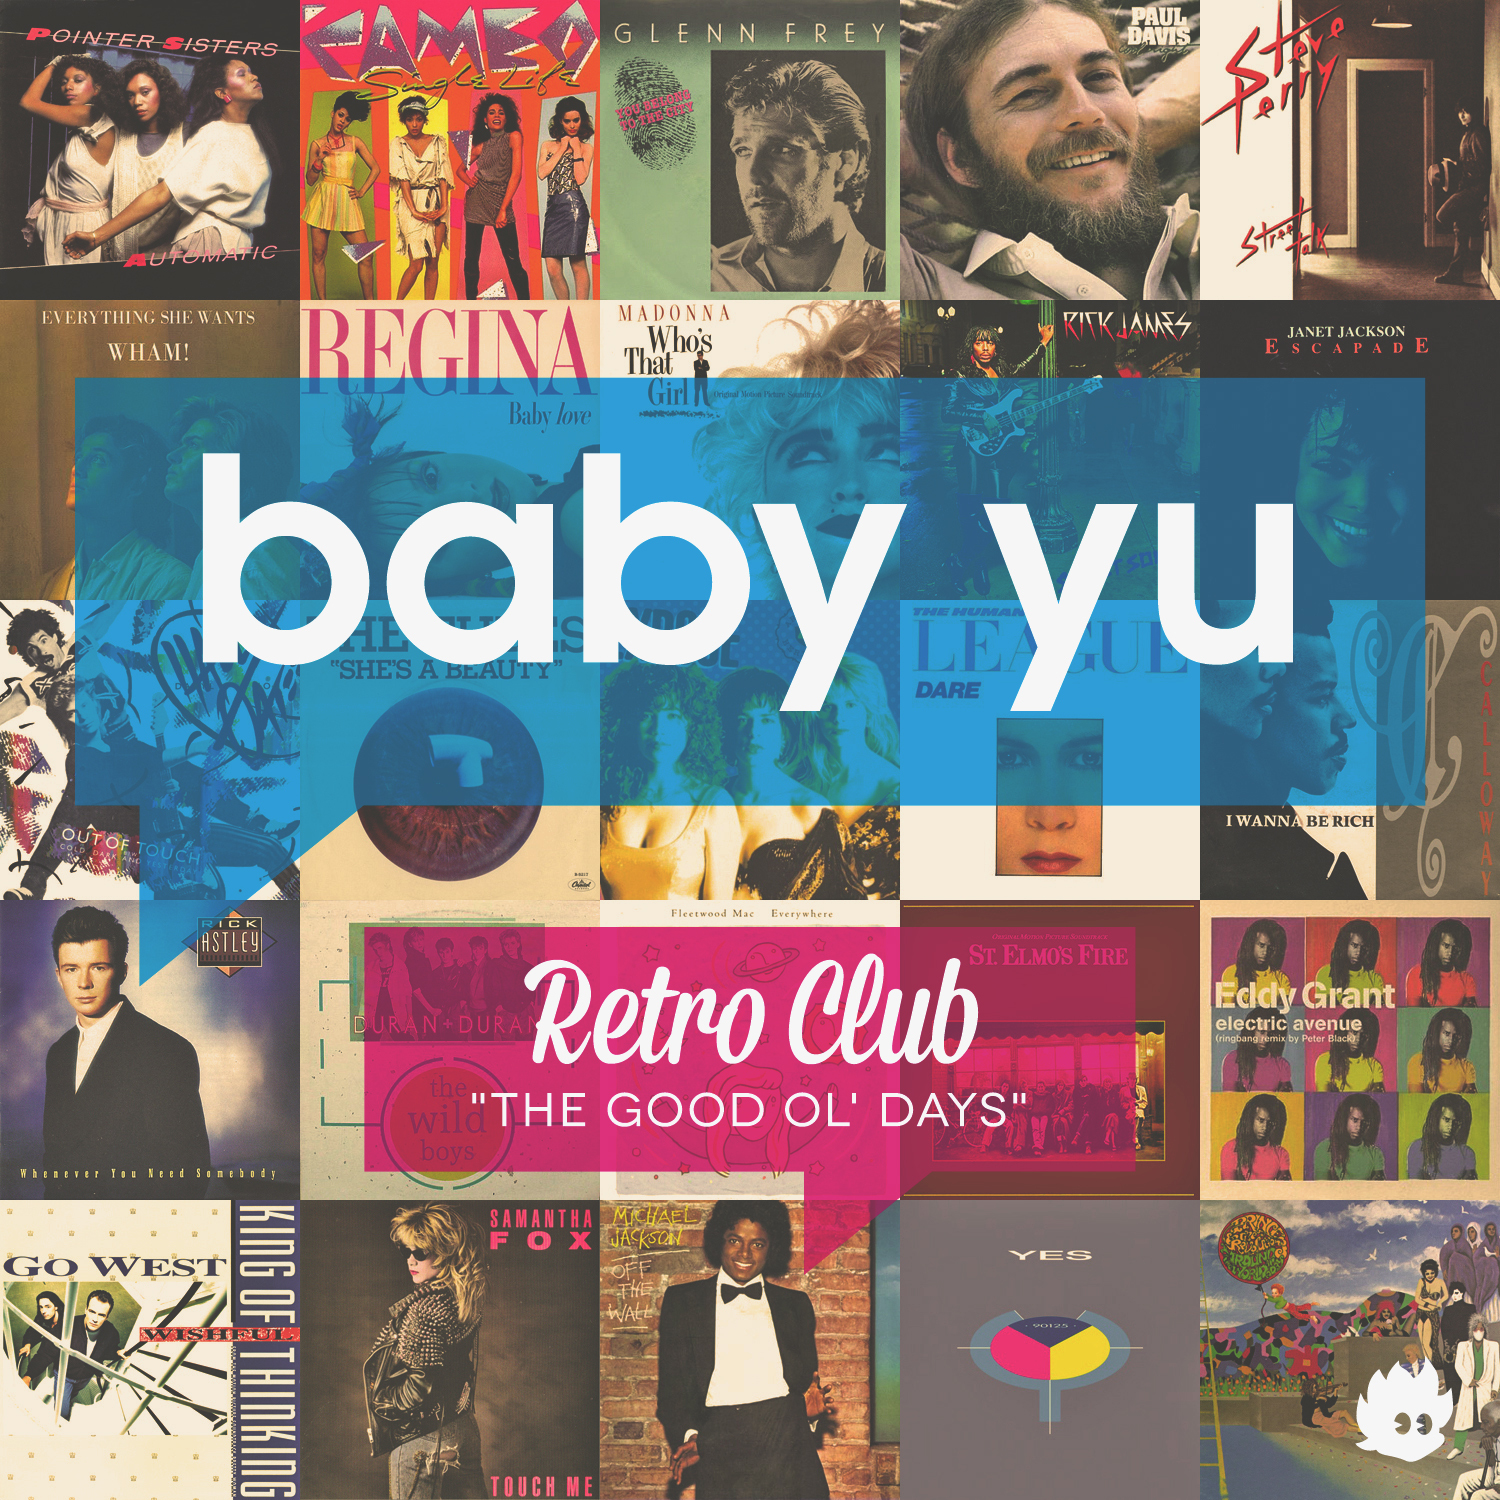 Retro Club (The Good Ol’ Days)